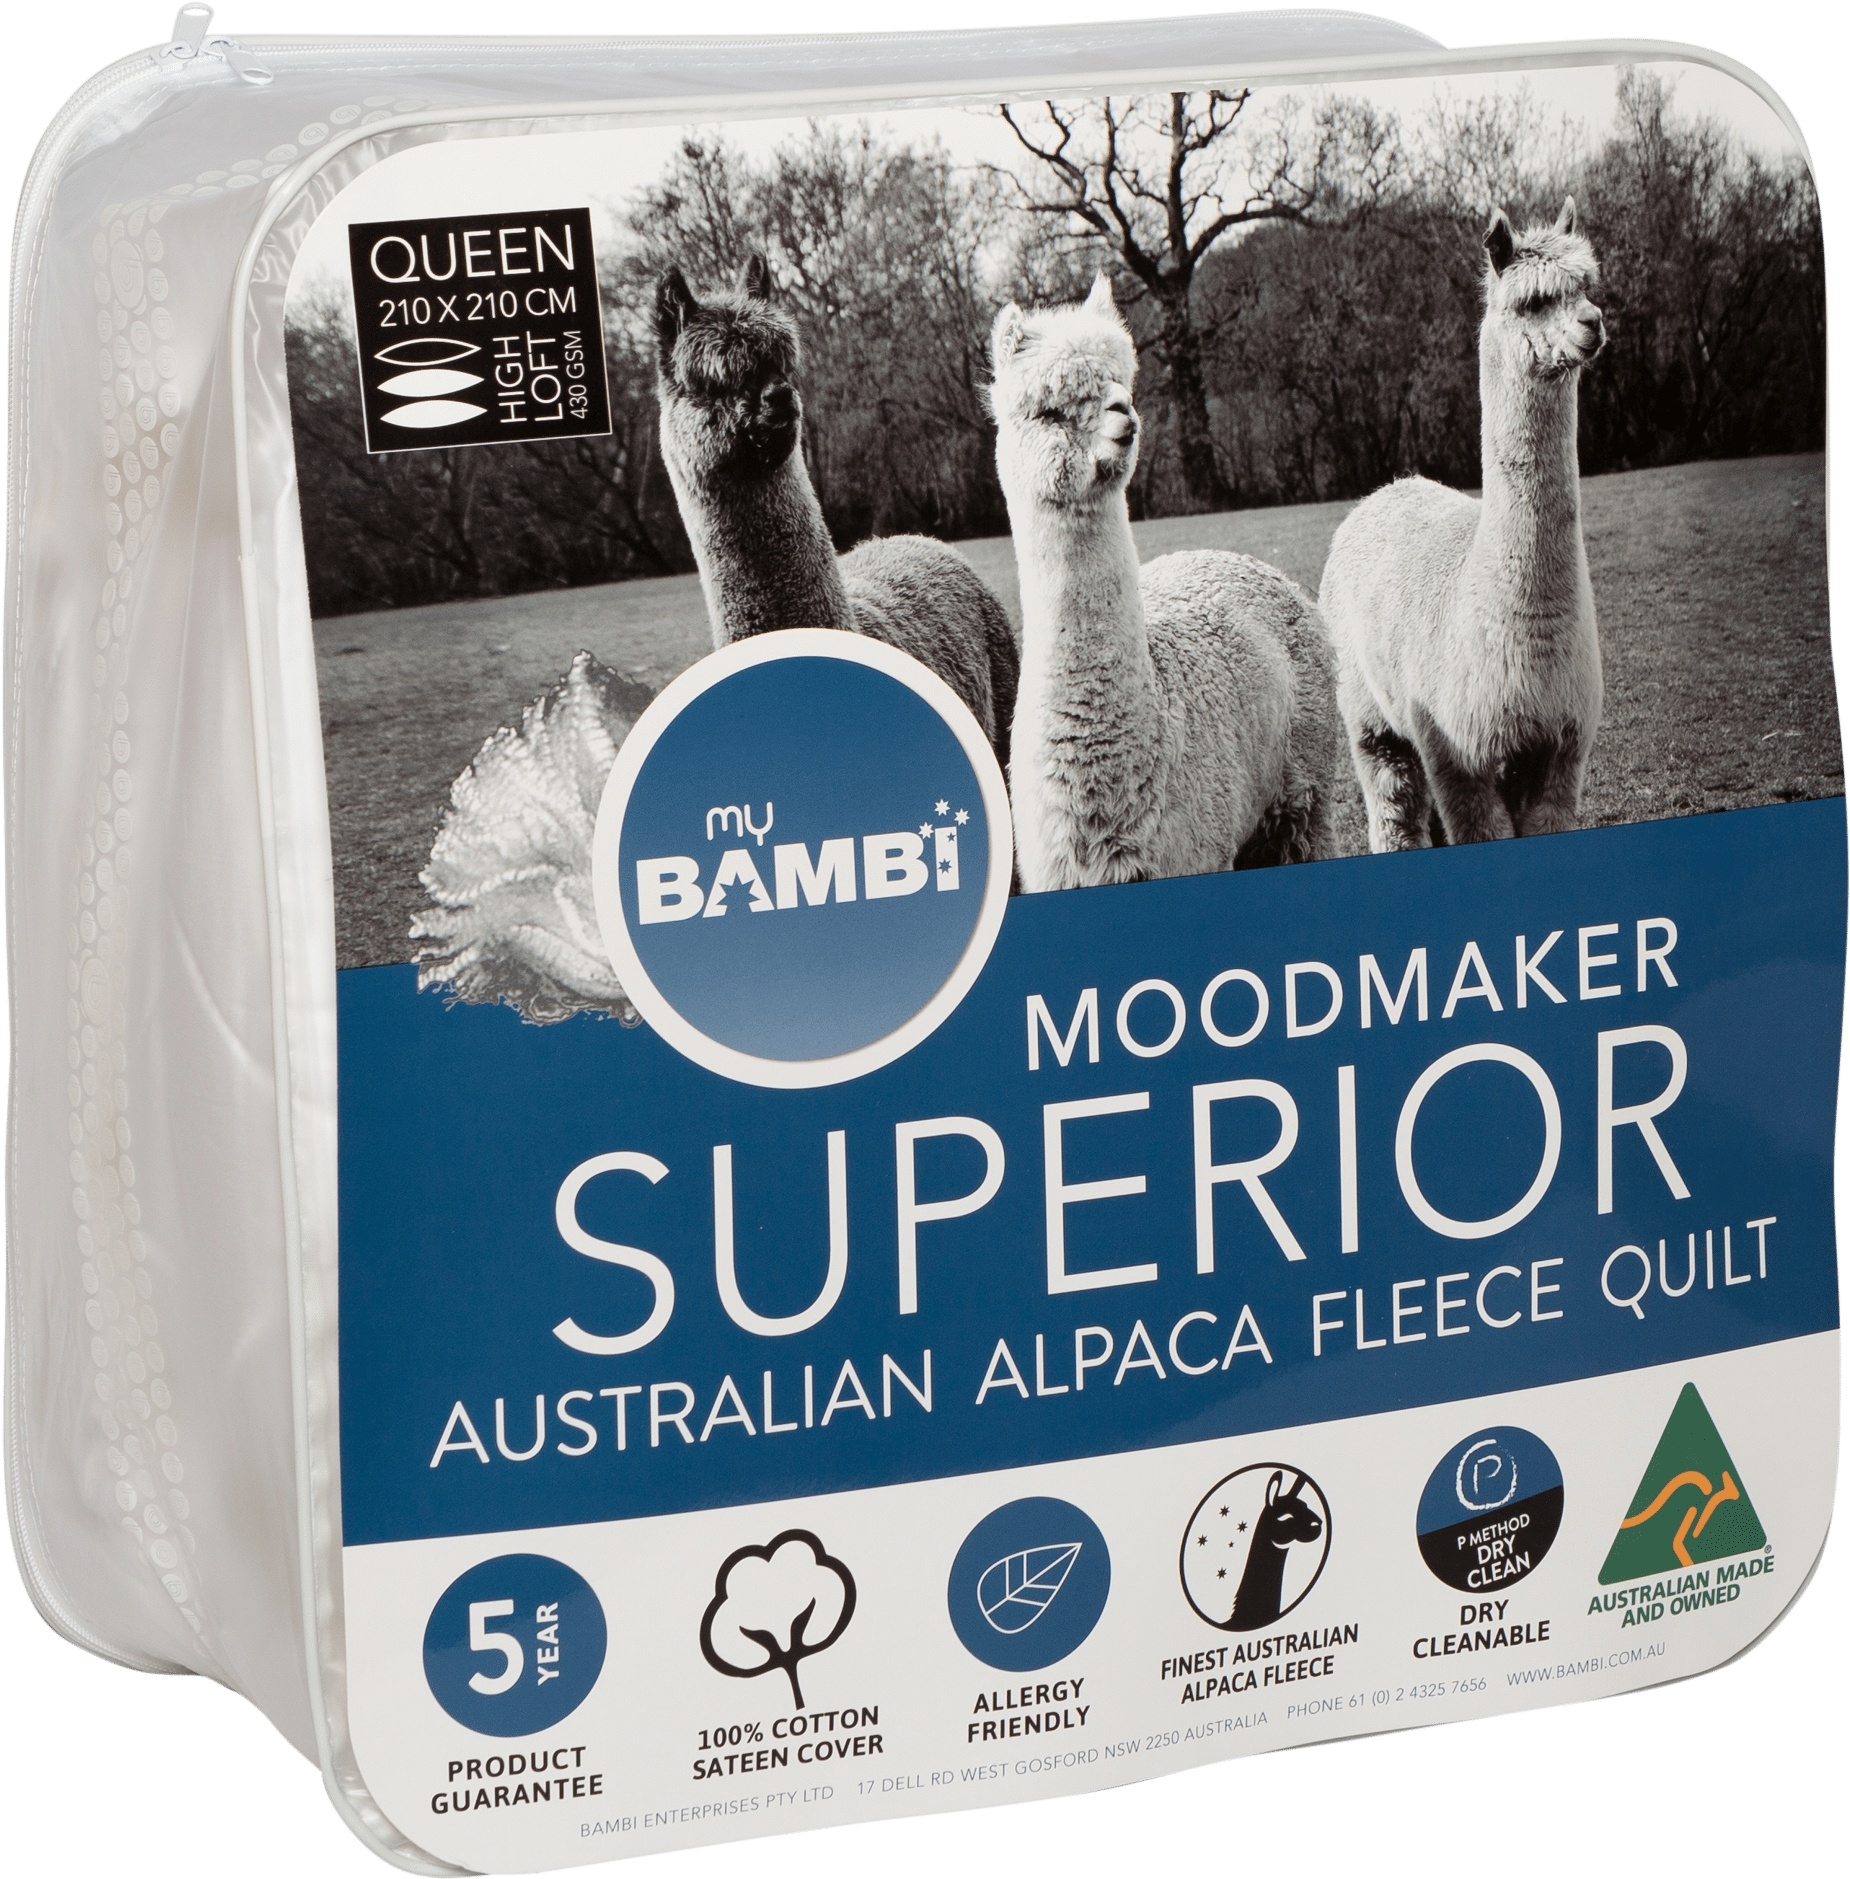 Australian Alpaca Fleece Quilt Packaging PNG image